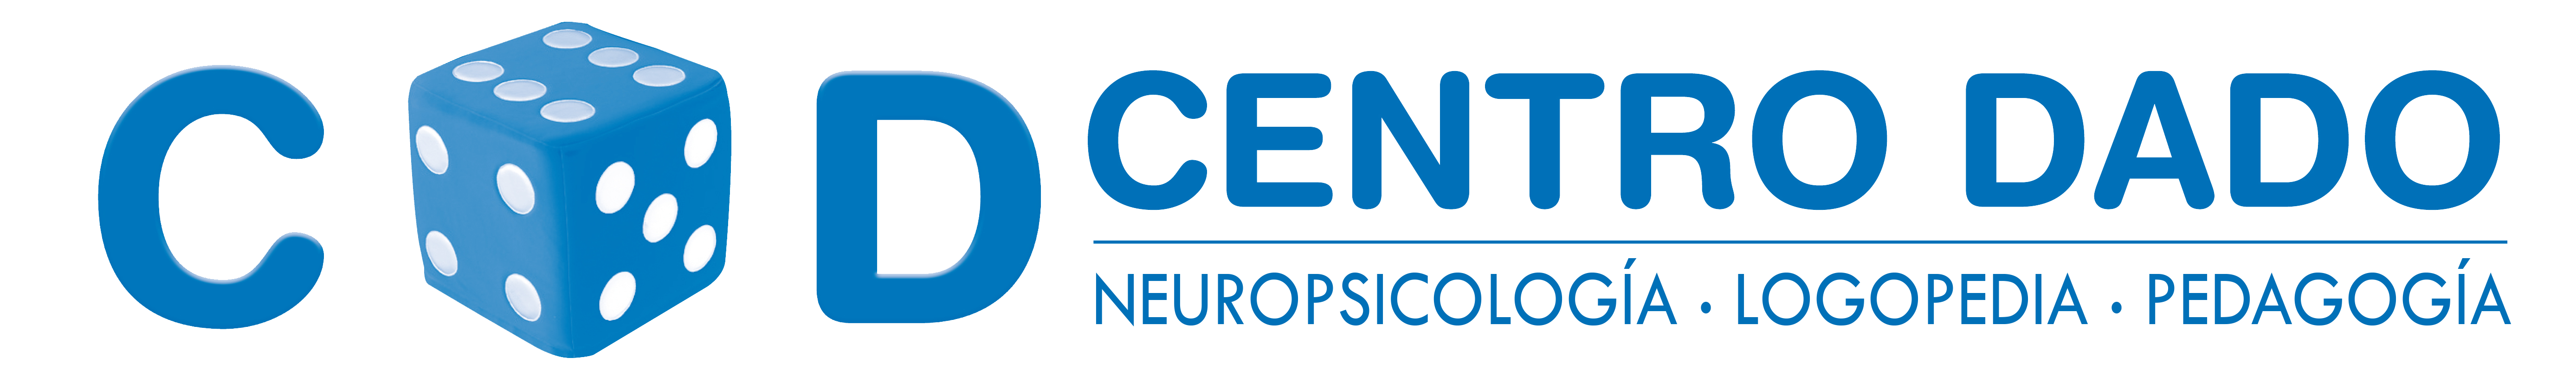 Centro Dado - Neuropsicología, Logopedia y Pedagogía logo